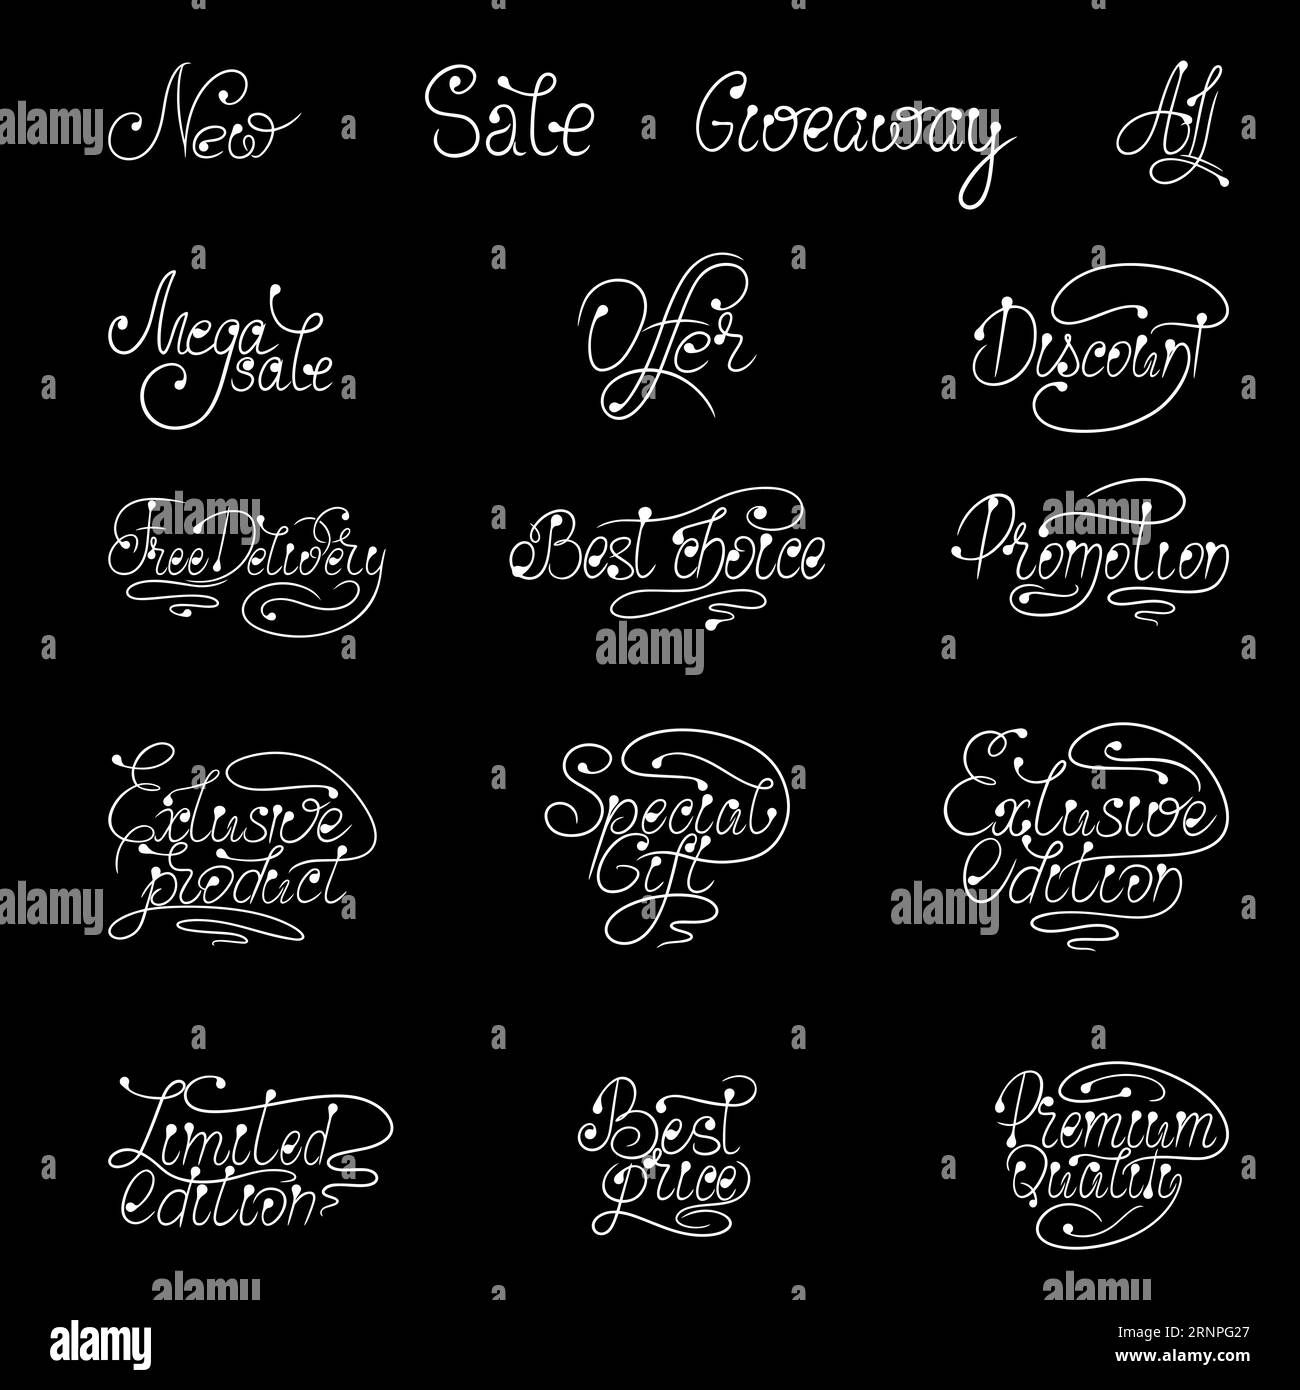 Modello di lettering calligrafico vettoriale su sfondo nero per grandi sconti, sconti e offerte speciali. Una soluzione di marketing con parole ben scritte Illustrazione Vettoriale